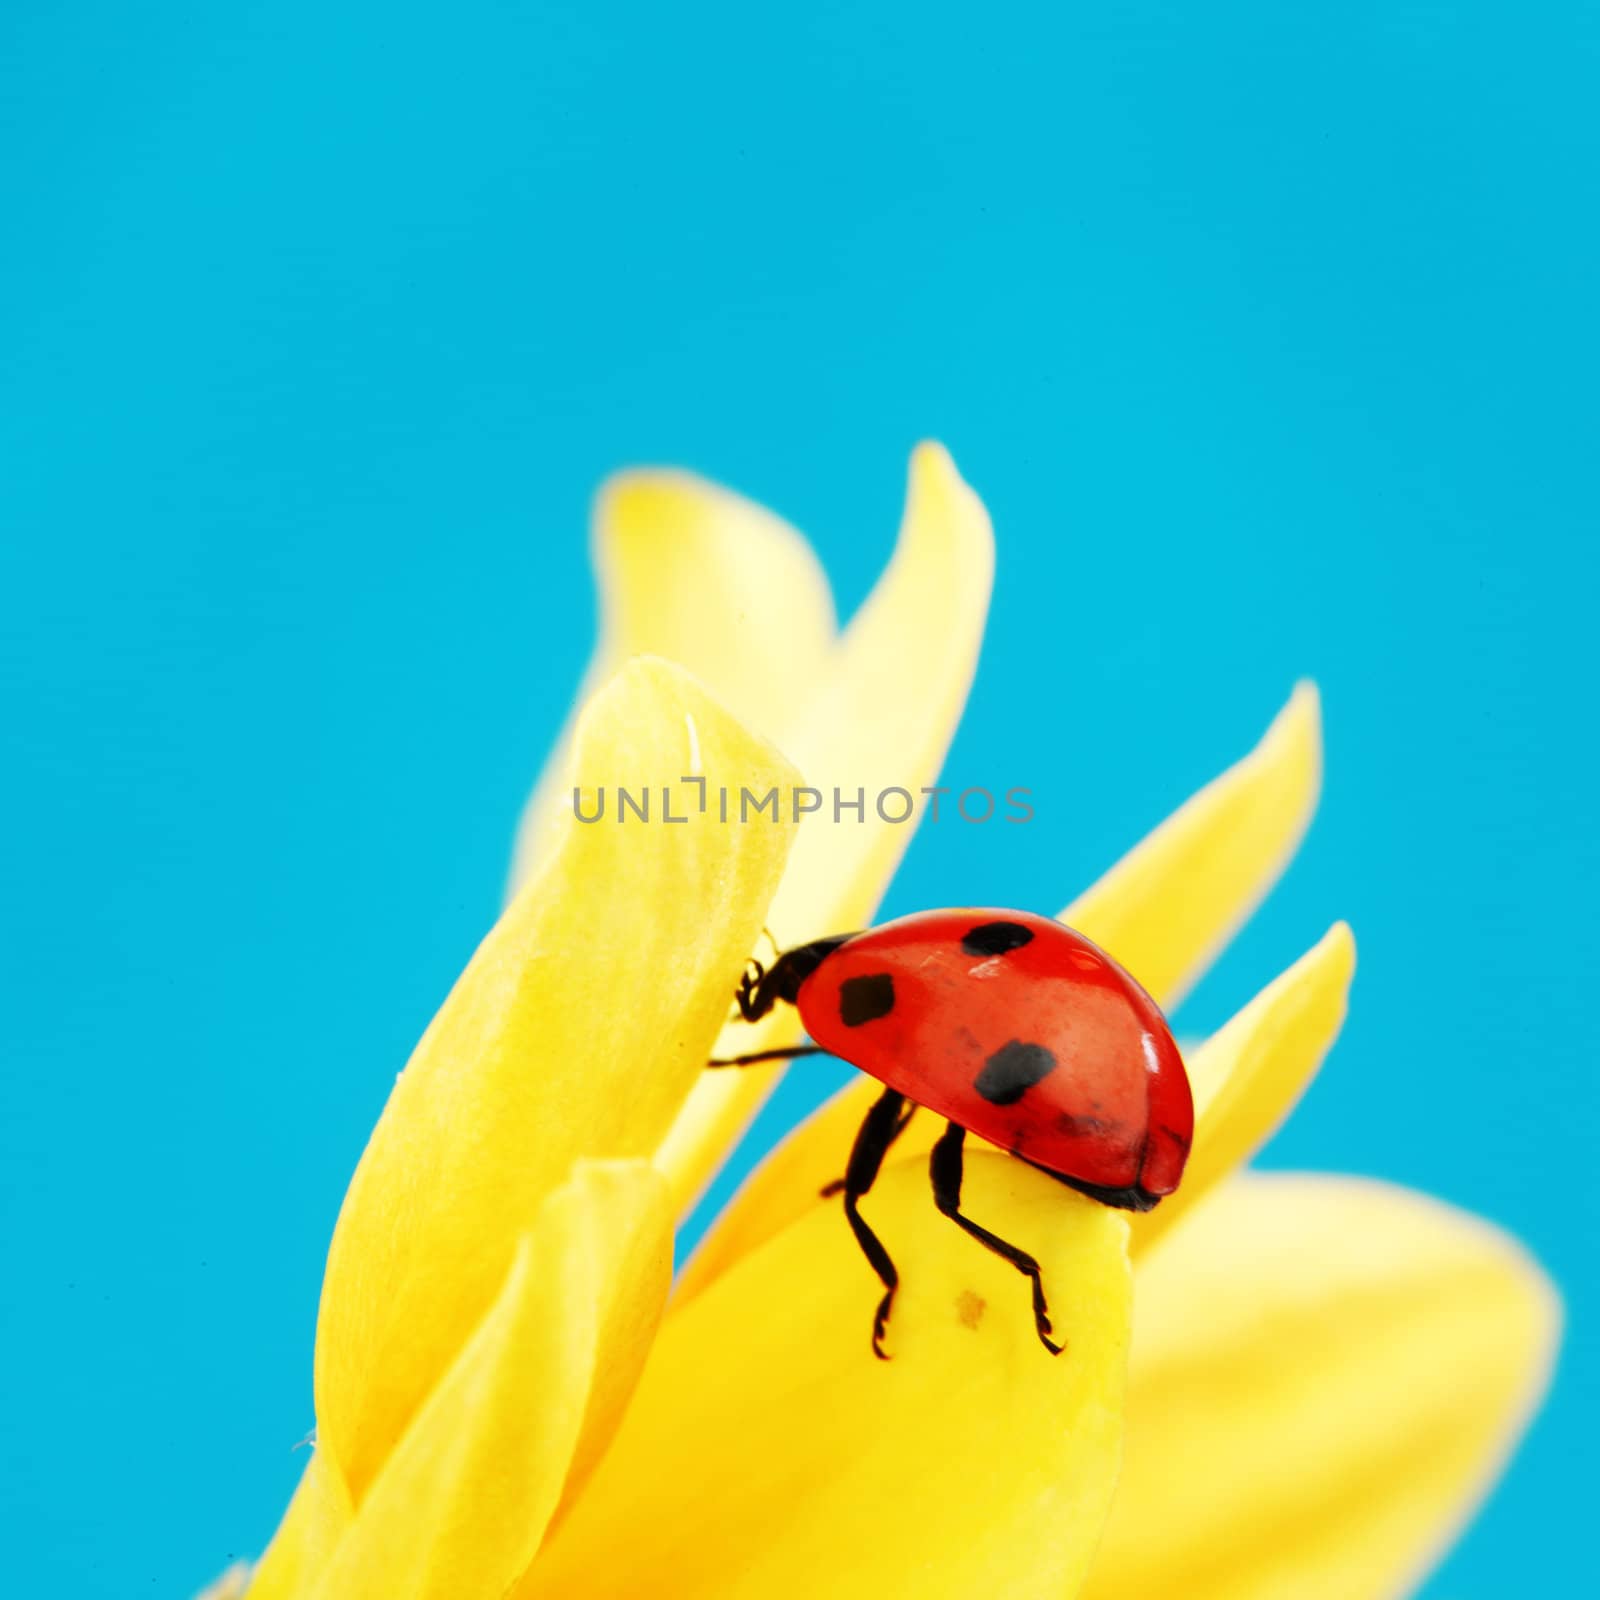 ladybug on sunflower blue background